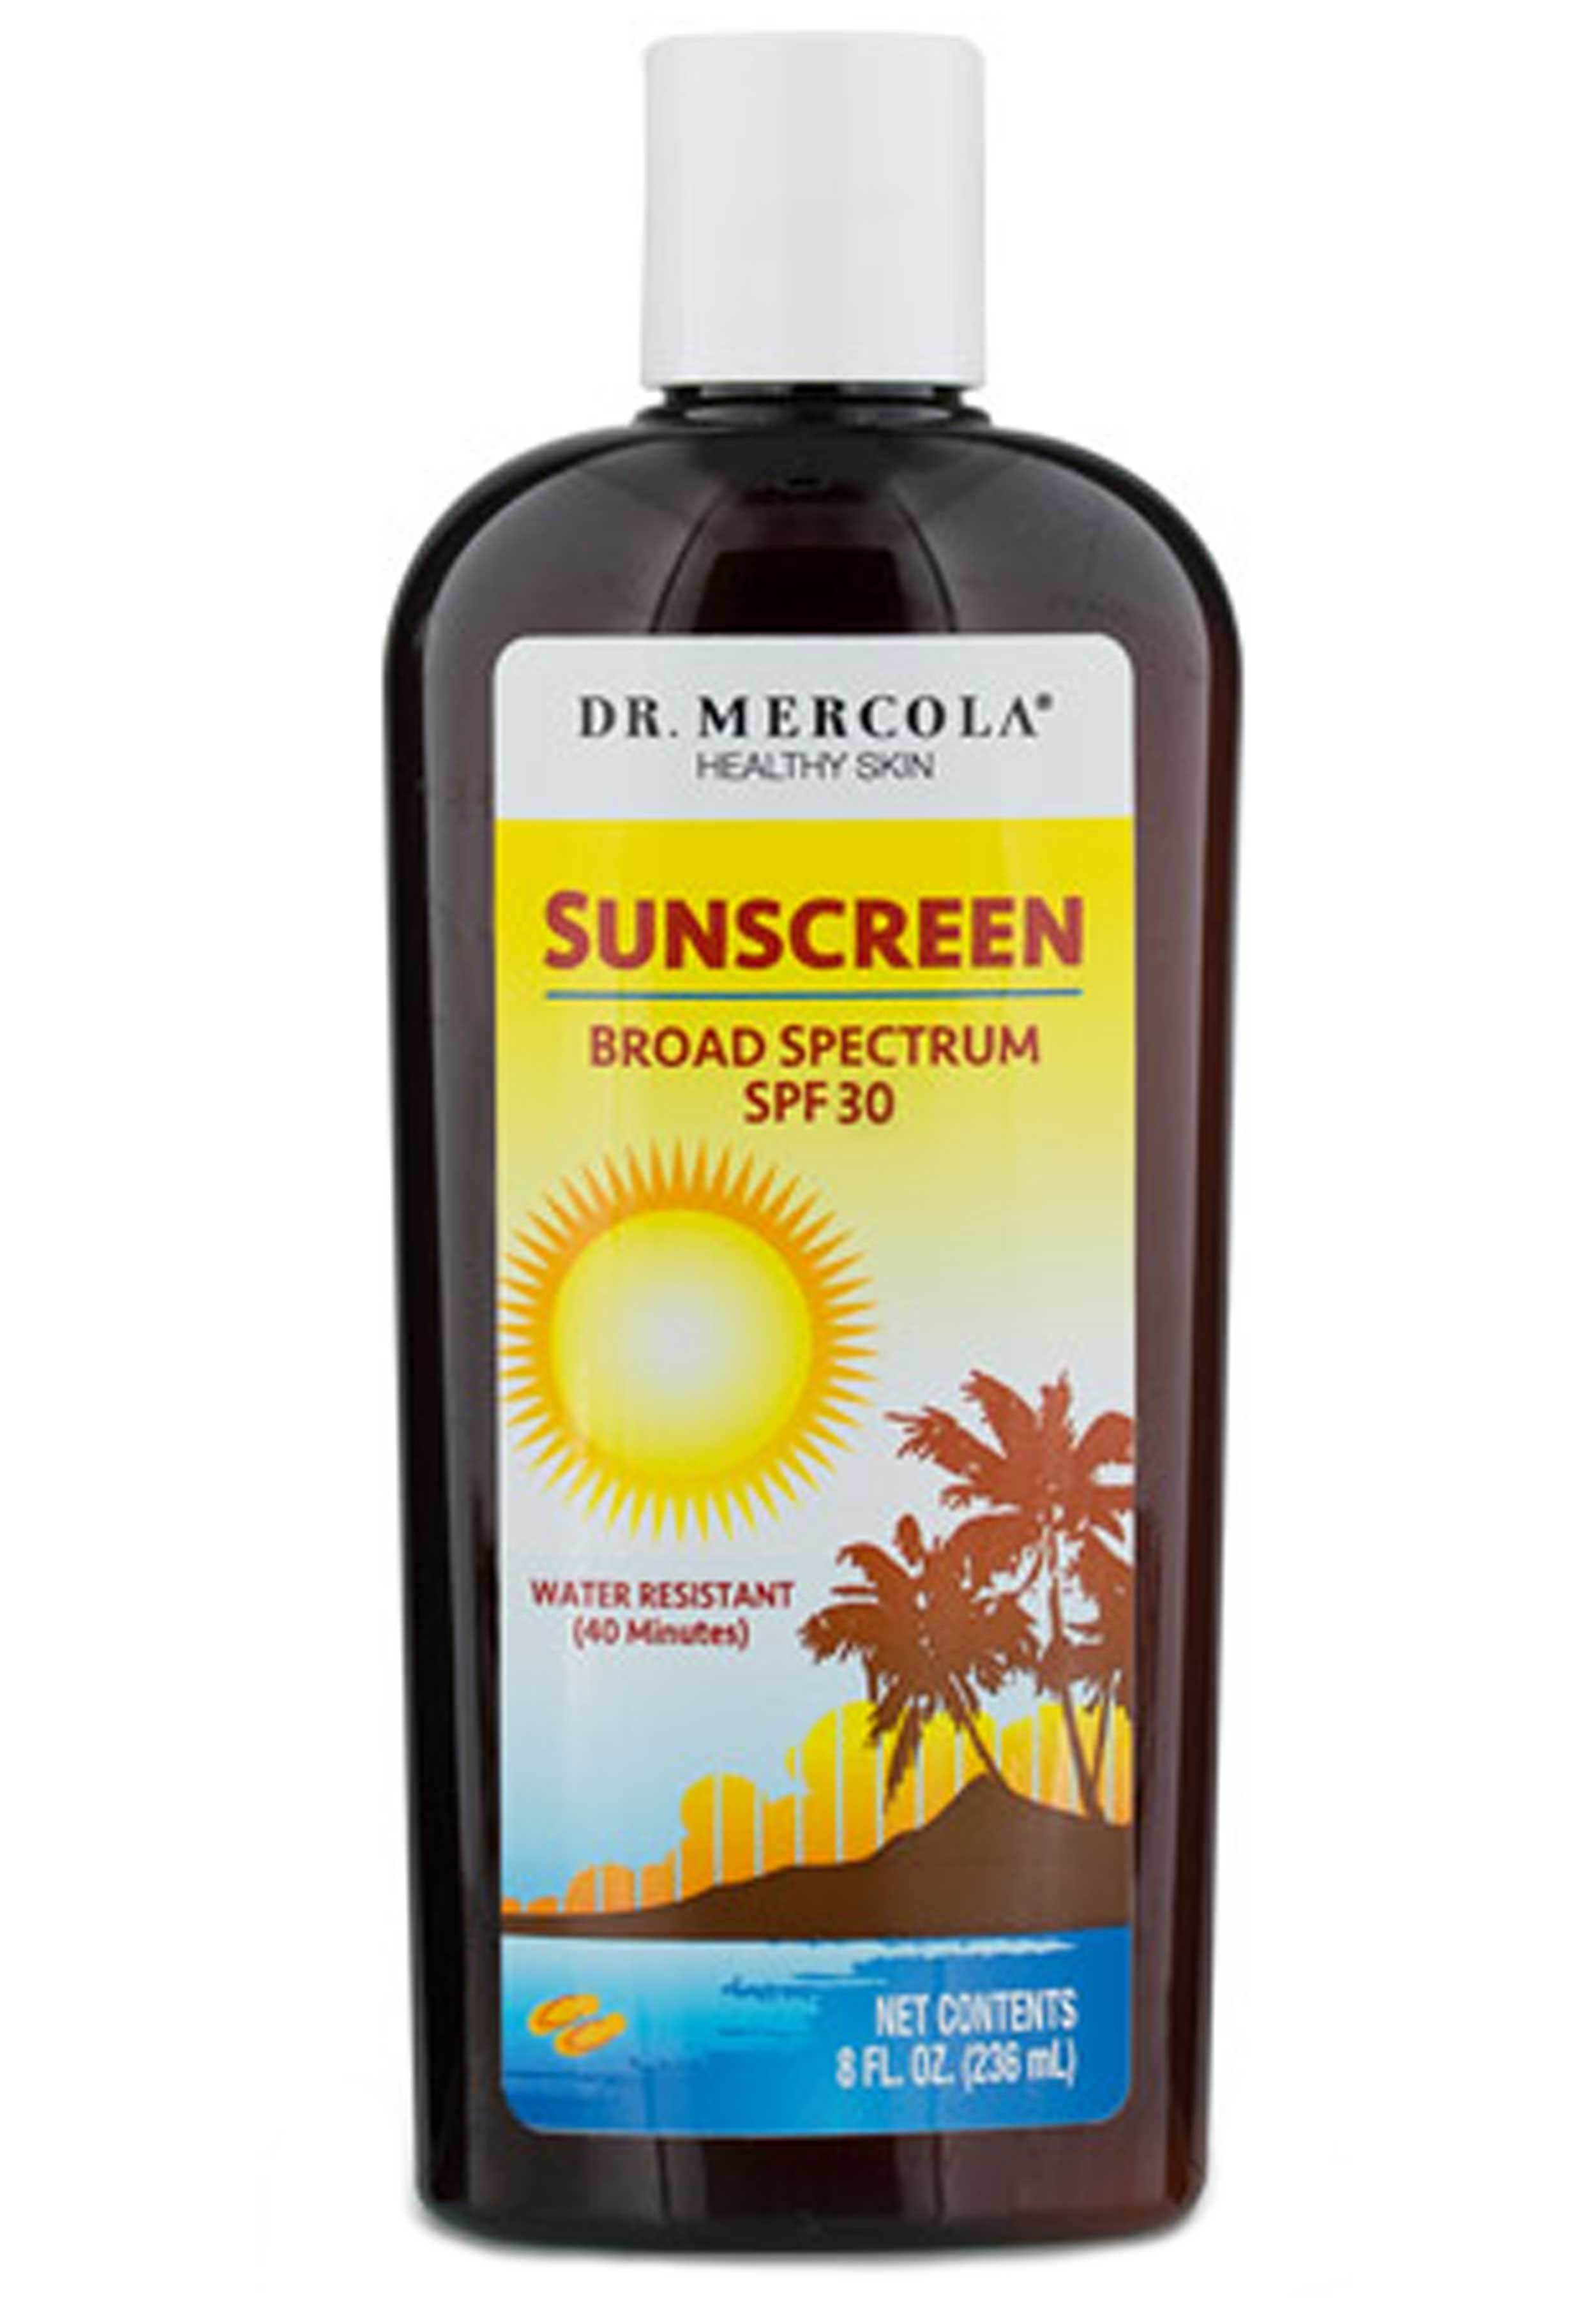 Dr. Mercola Natural Sun Screen SPF 30